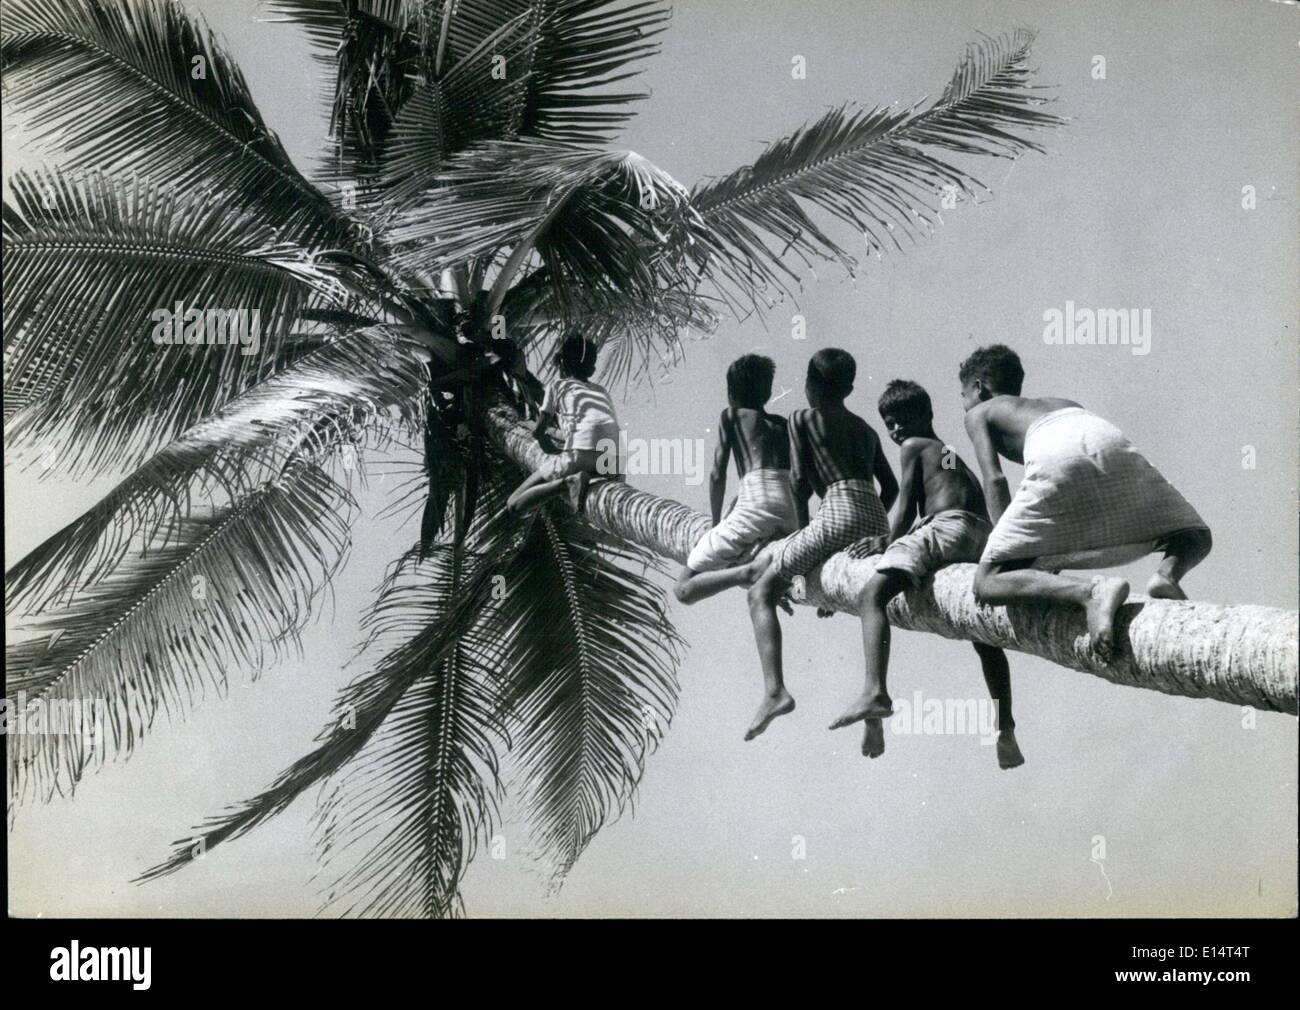 18. April 2012 - kommunistischen Kokosnüsse: Um Trivandrum, wächst die kommunistische Hochburg in Indiens kleinsten Bundesstaat Kerala Millionen von Kokospalmen, die alles, was Sie tun müssen, ist, dass man auf den Baum klettern und hilf dir selbst, wie die Söhne der Fischer tun. Es geht um das einzige in der kommunistische Staat kontrollierte kostenlos. Stockfoto